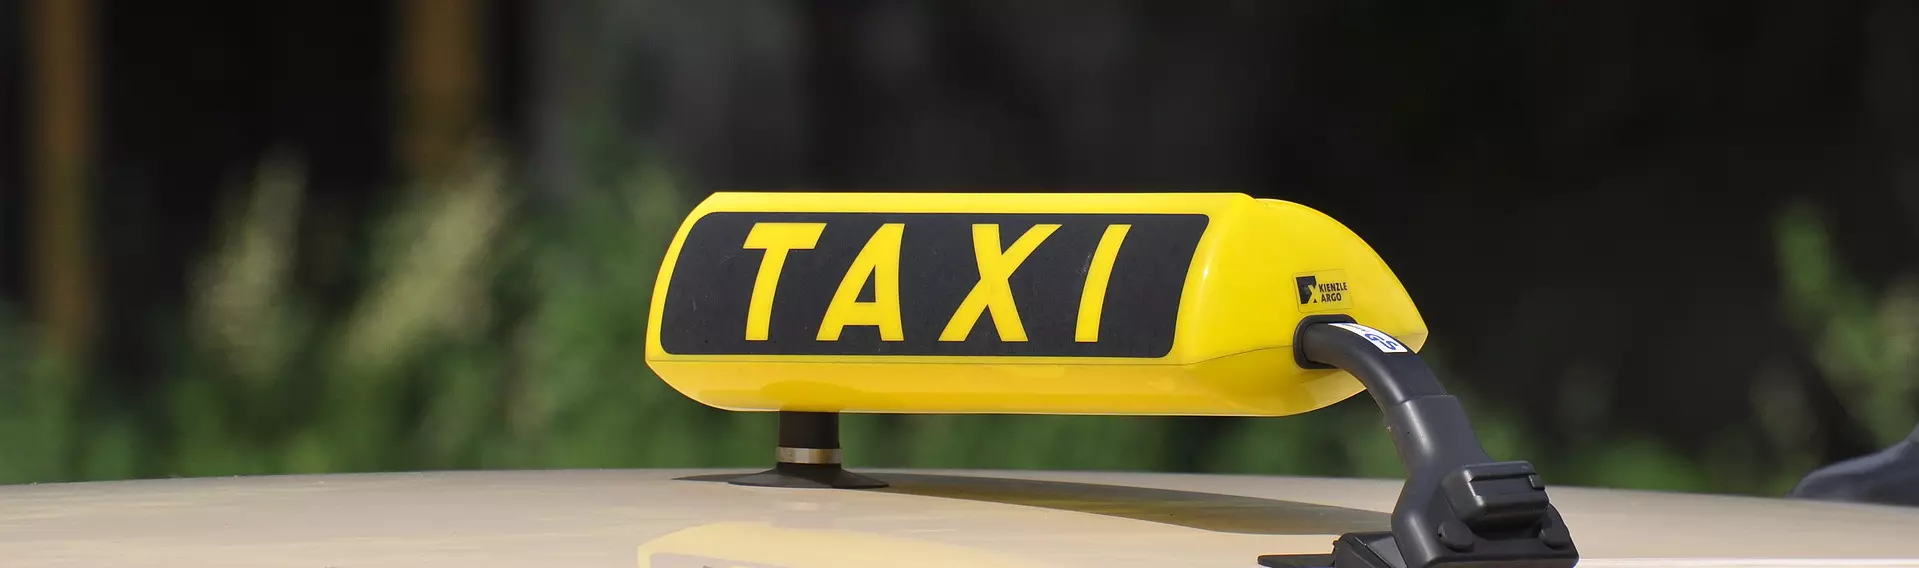 Taxi-Schild auf einem Taxi